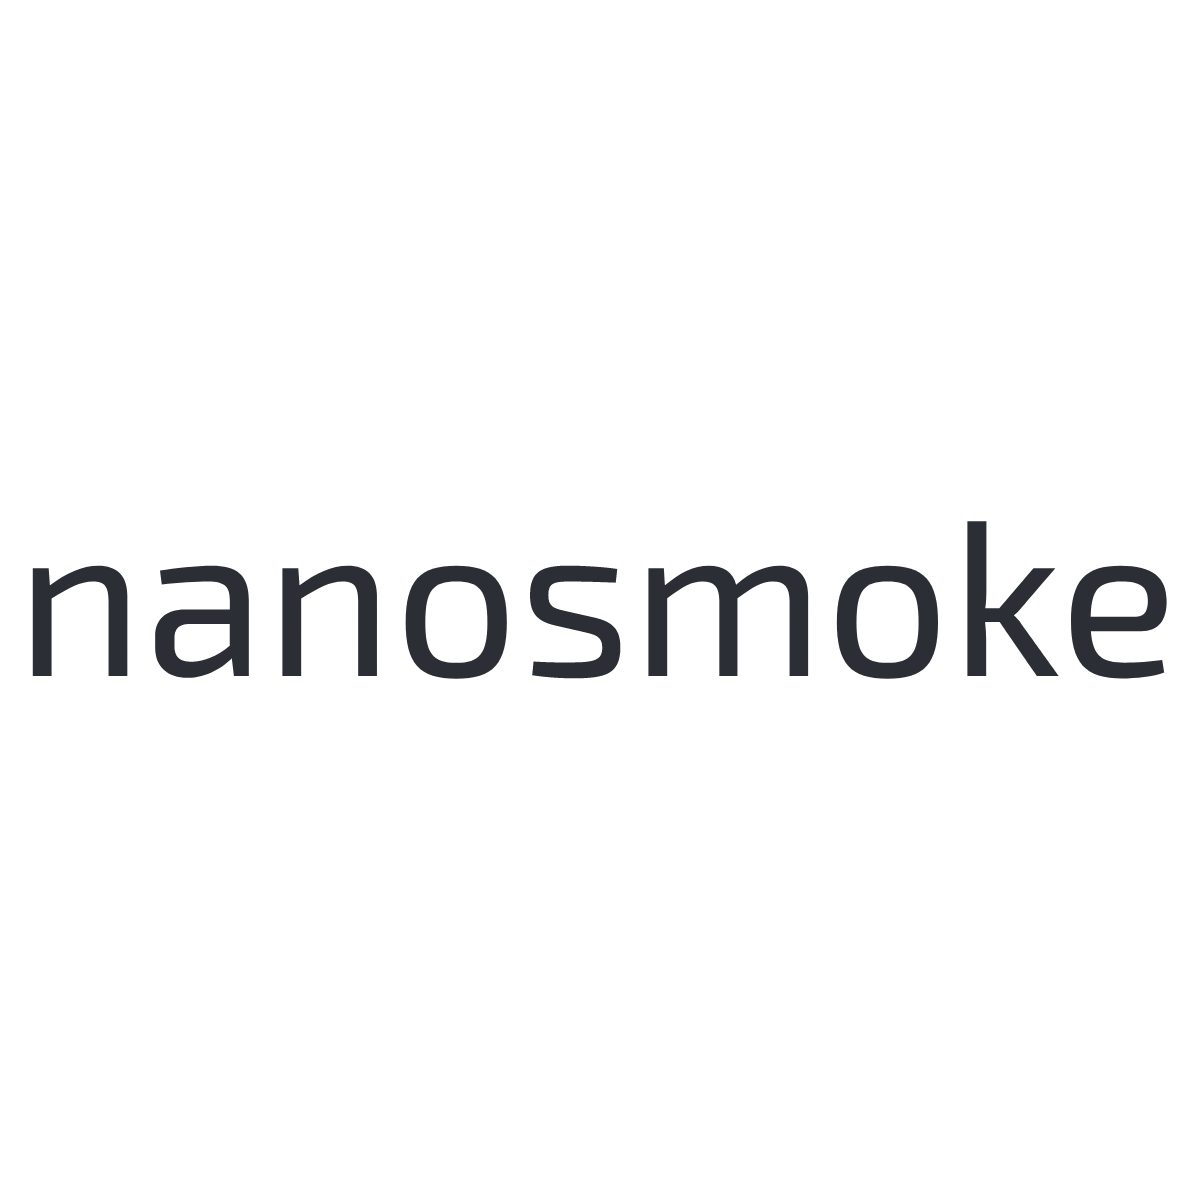 nanosmoke